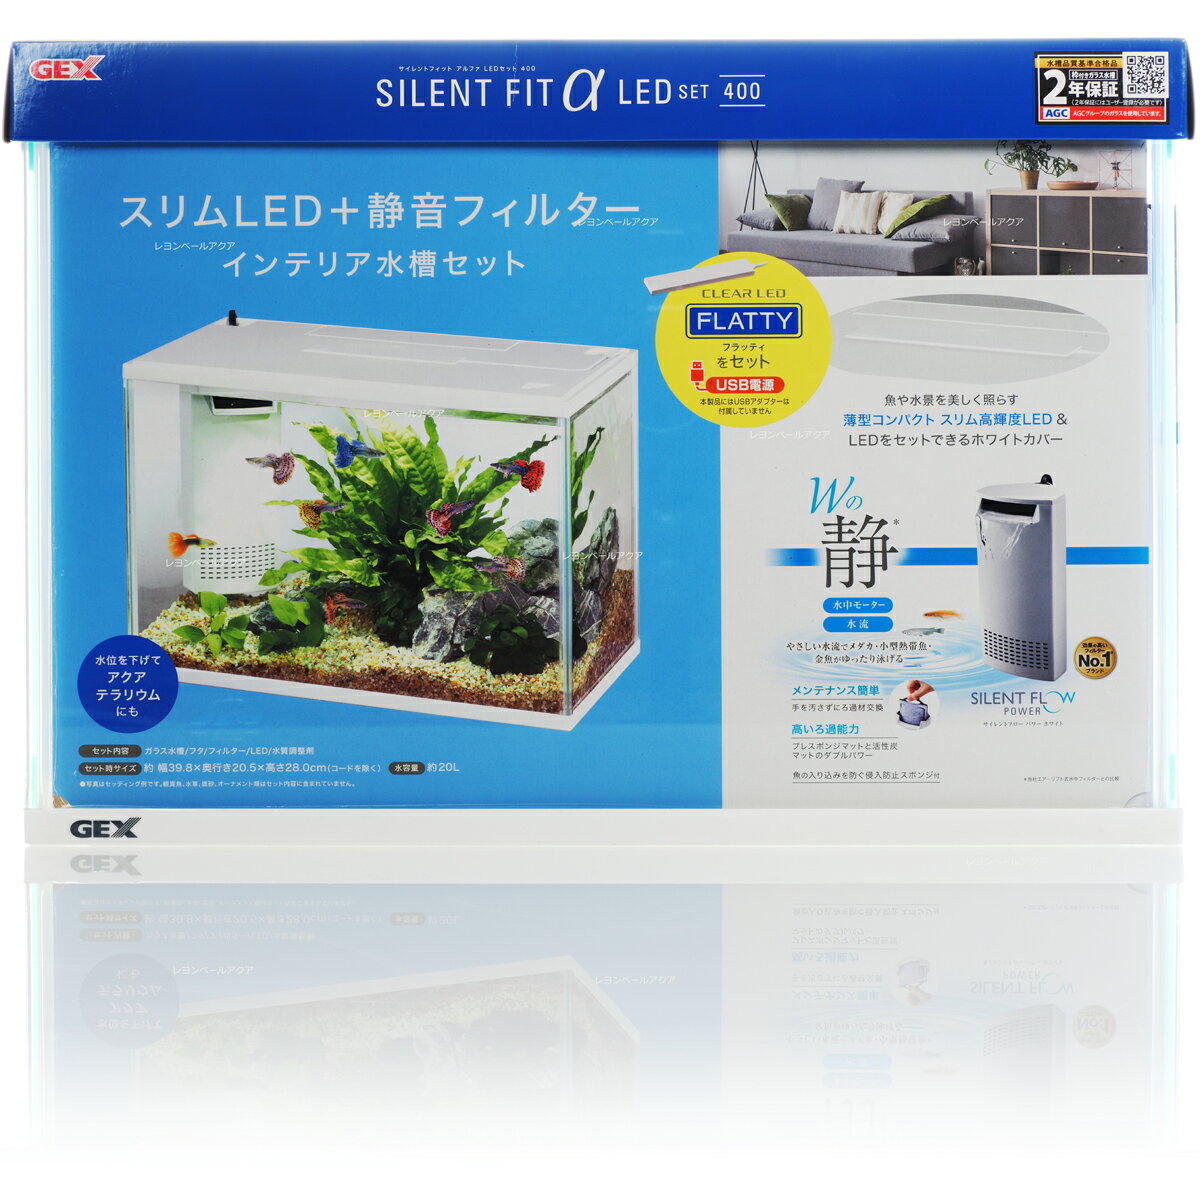 【全国送料無料】GEX サイレントフィット アルファLEDセット400 水槽セット (新ロット新パッケージ)